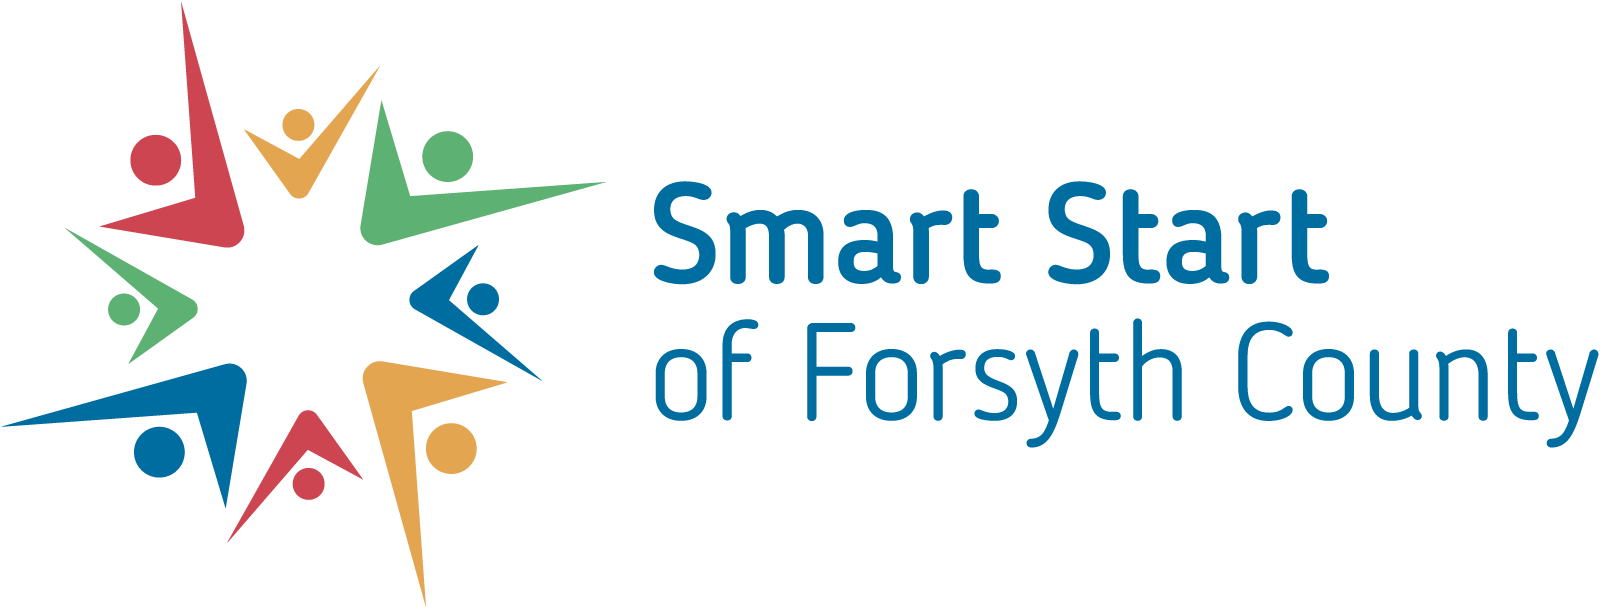 Smart Start of Forsyth County logo